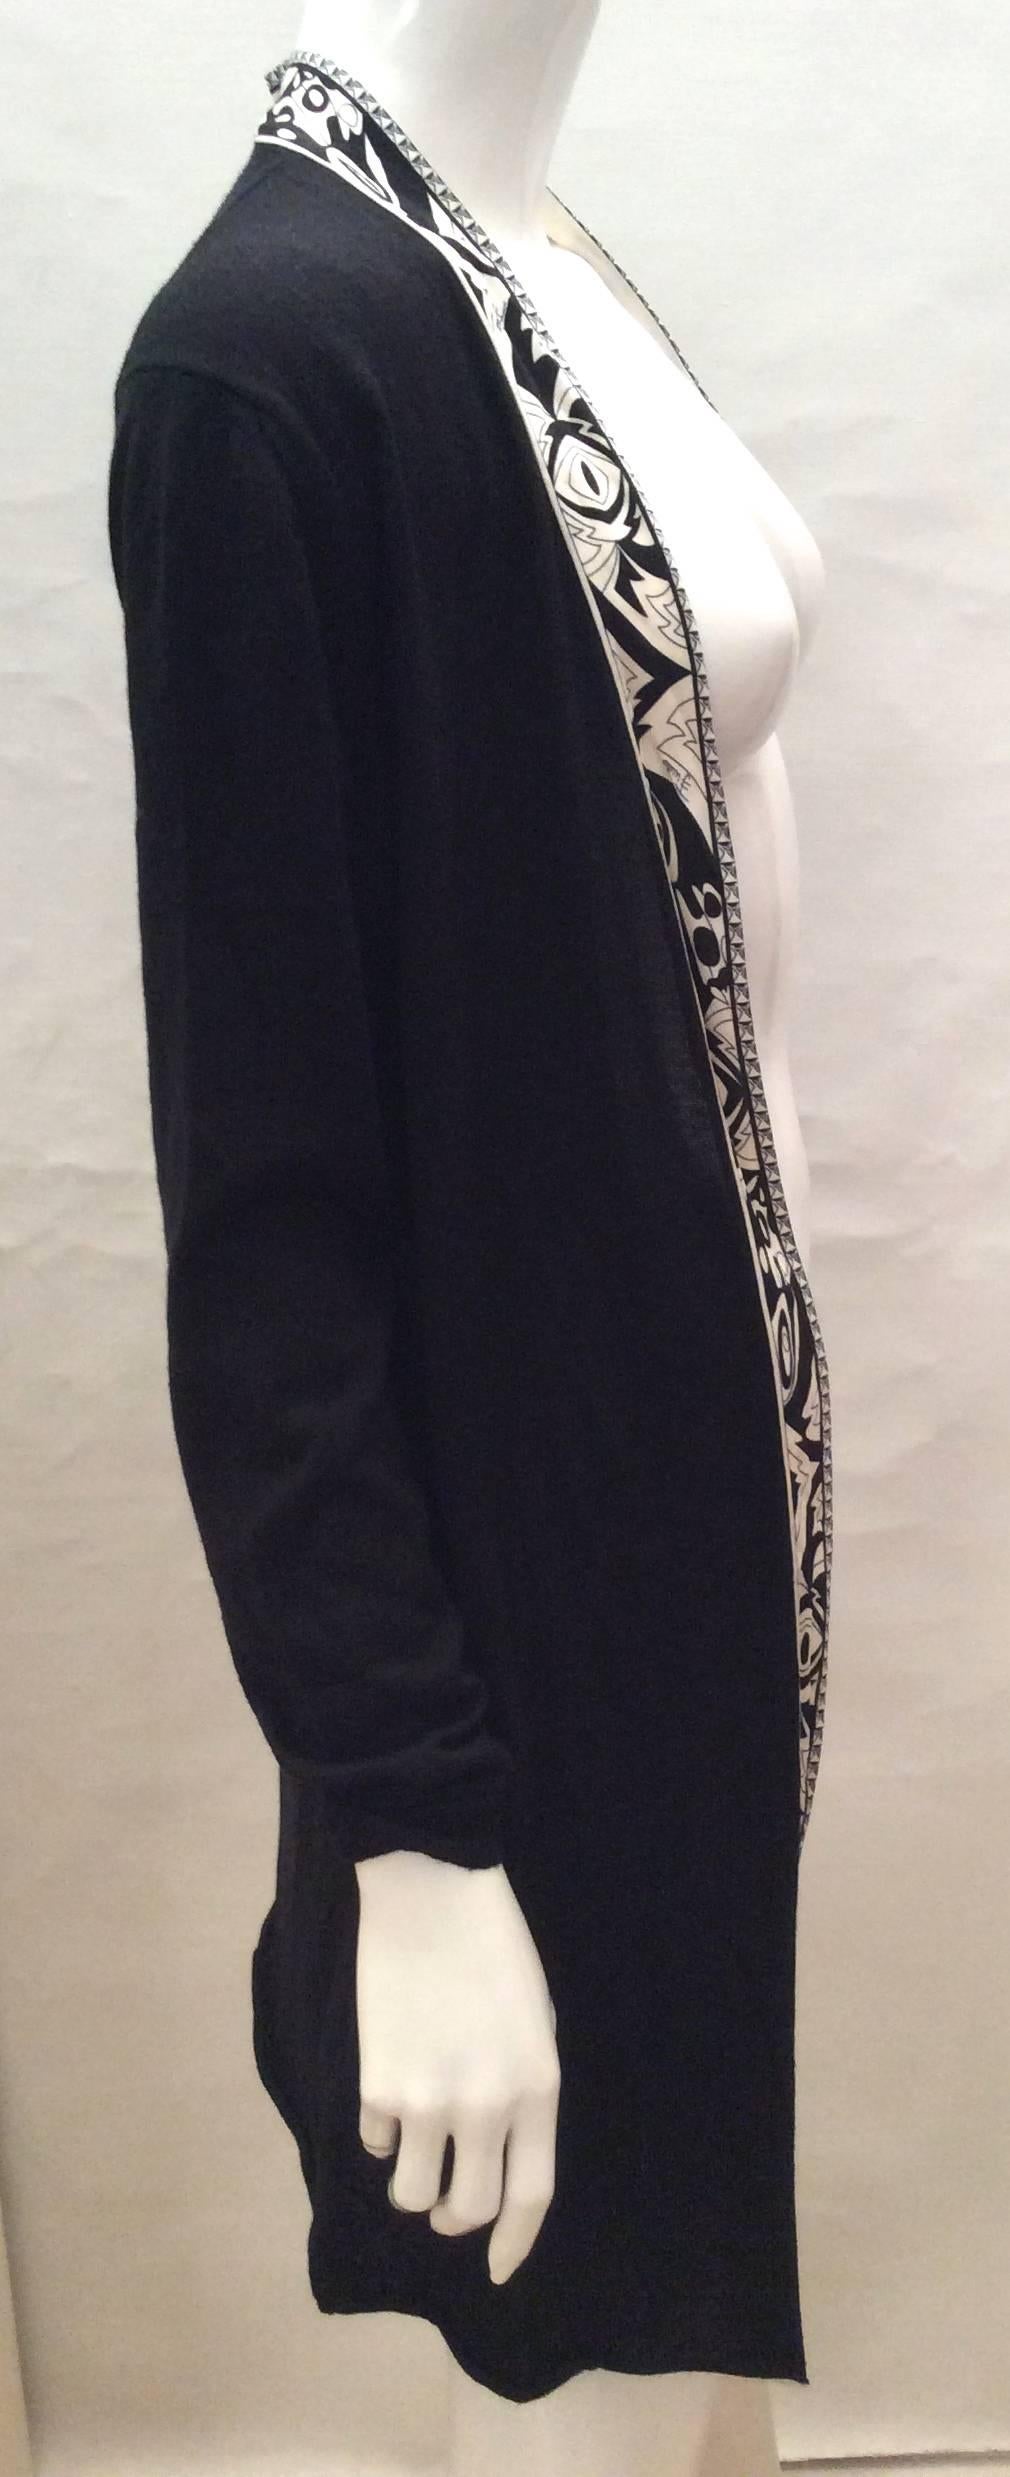 New Emilio Pucci Black Sweater - Size 42 In New Condition For Sale In Boca Raton, FL